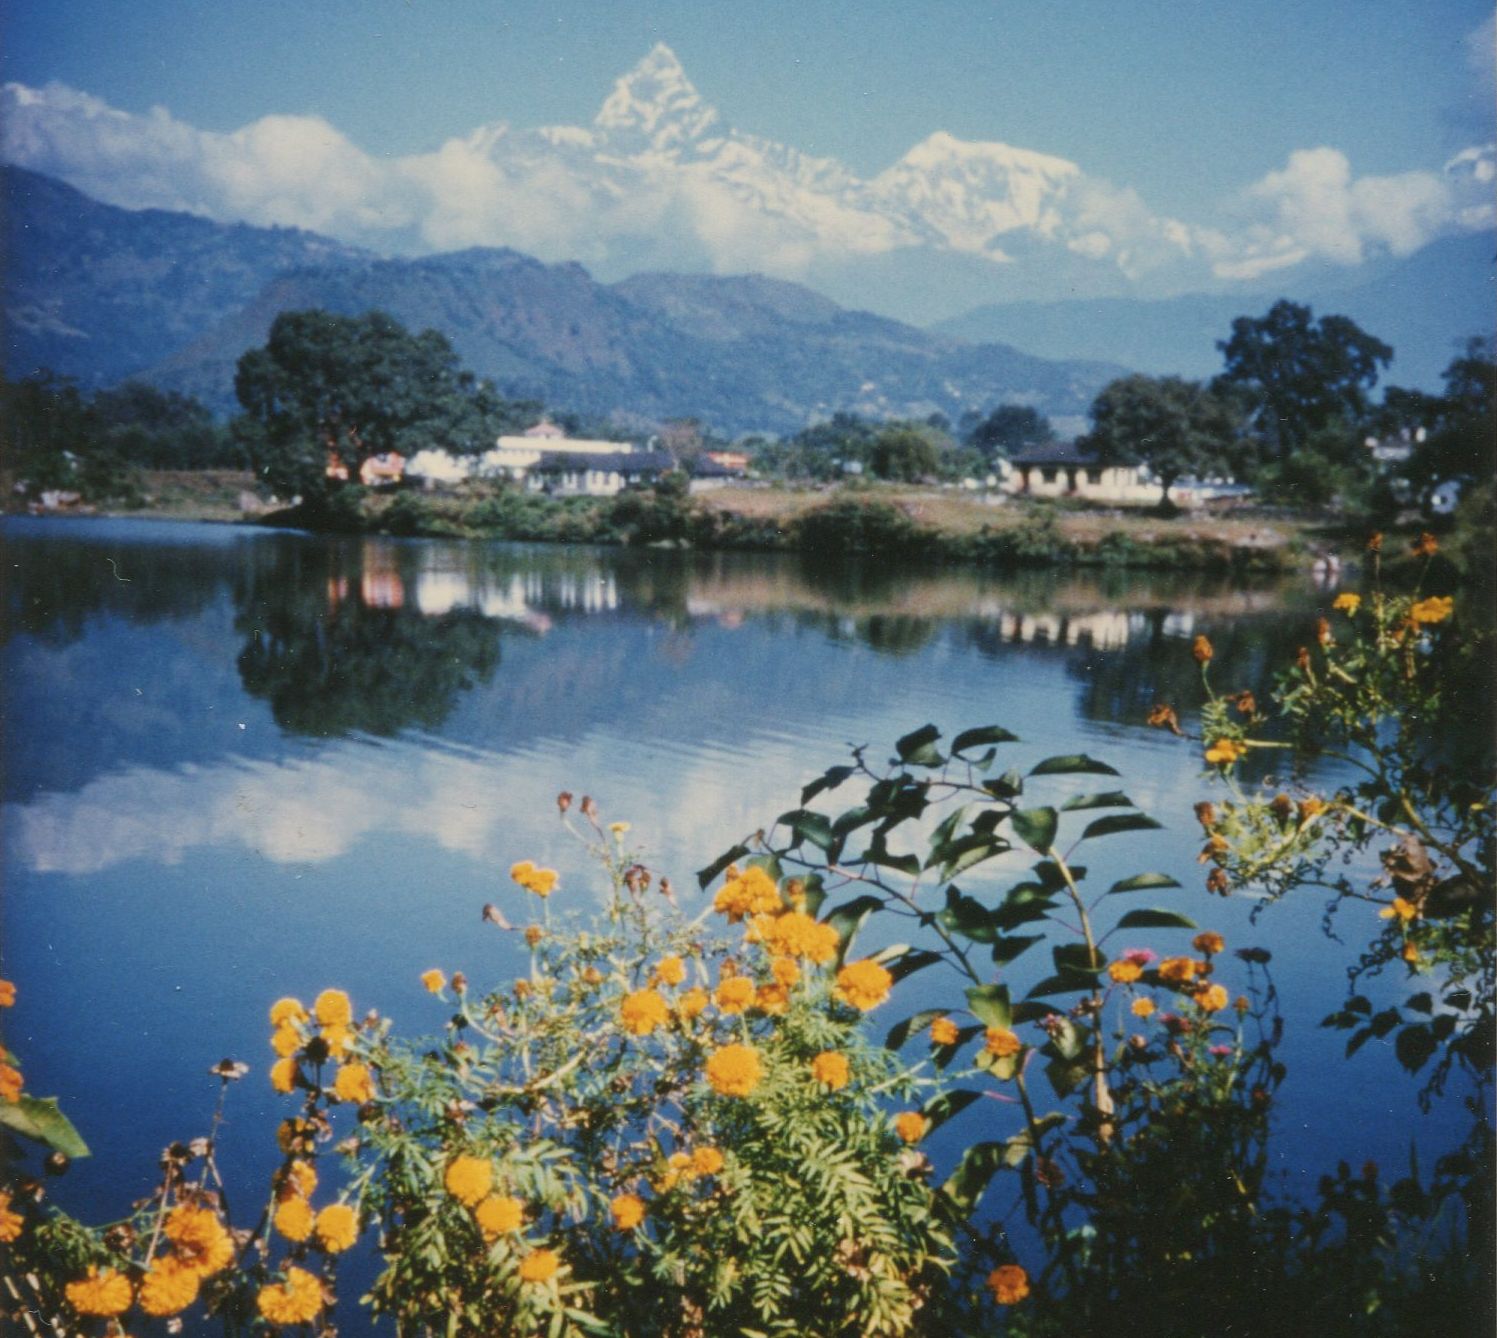 Mount Macchapucchre ( Fishtail Mountain ) from Phewa Tal at Pokhara